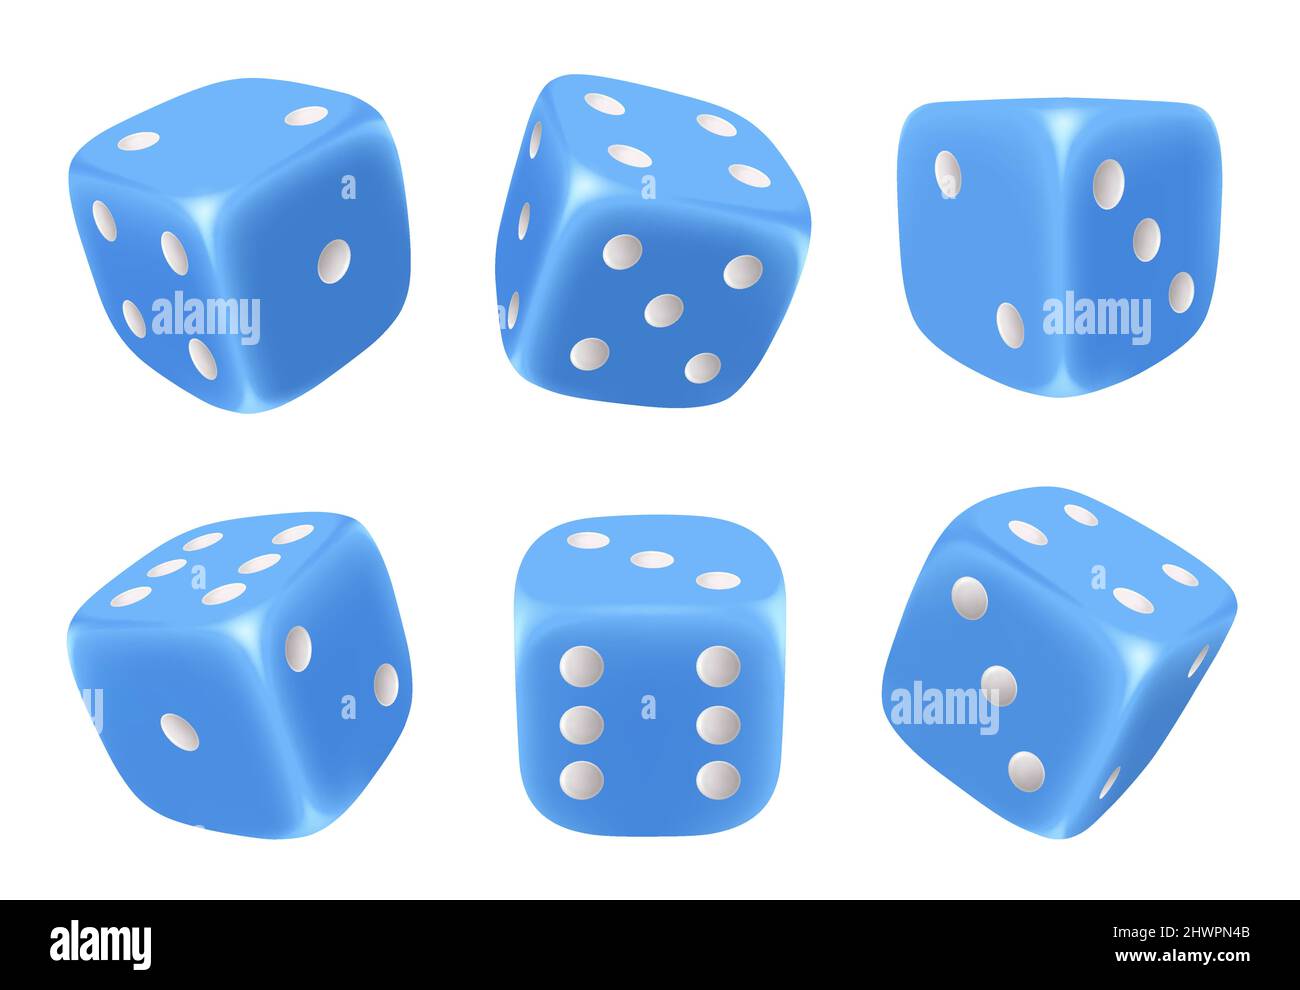 Würfelspiel. 3D Würfel für Glücksspiel Symbole der glücklichen  Zufallsauswahl verschiedene riskante Würfel mit sechs Seiten anständige  Vektor-Bilder gesetzt Stock-Vektorgrafik - Alamy